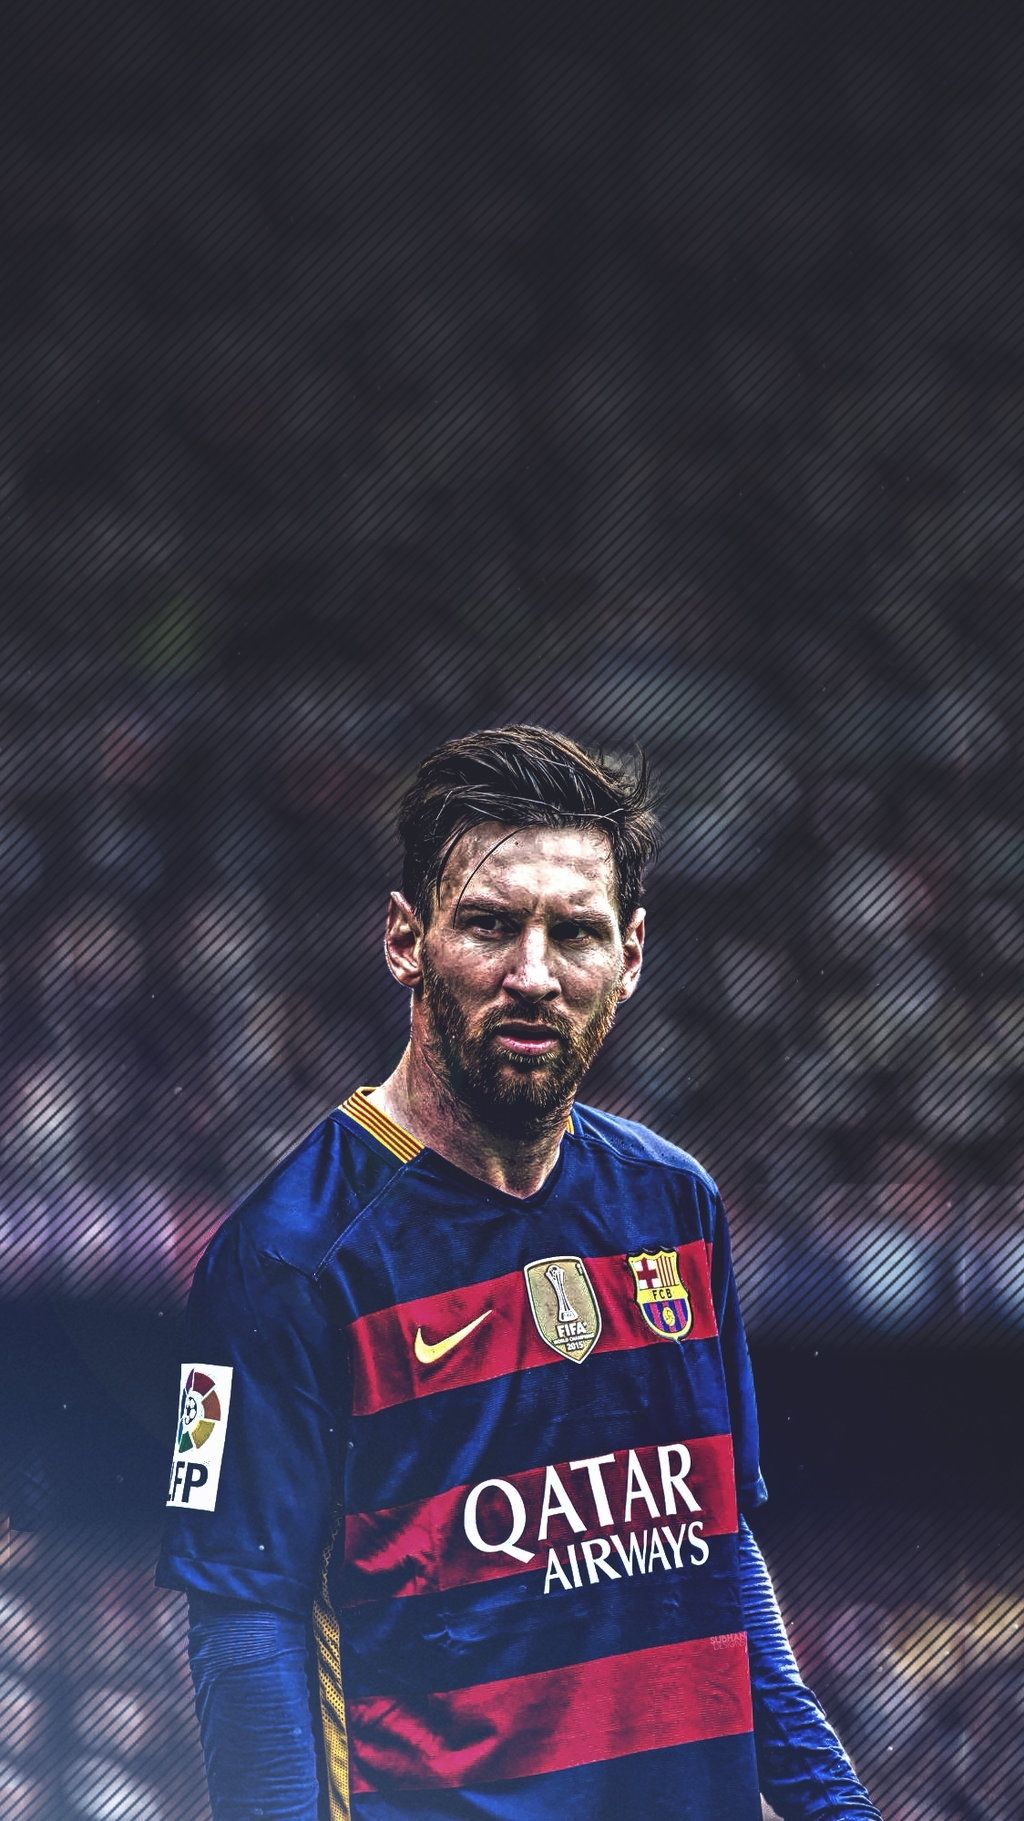 Hình nền Messi cho iPhone sẽ khiến bạn cảm thấy ngỡ ngàng với sự tinh tế và uyển chuyển của hình ảnh. Để tận hưởng trọn vẹn điều đó, hãy xem ngay hình nền Messi trên iPhone và nhận biết được sự khác biệt đáng kinh ngạc.